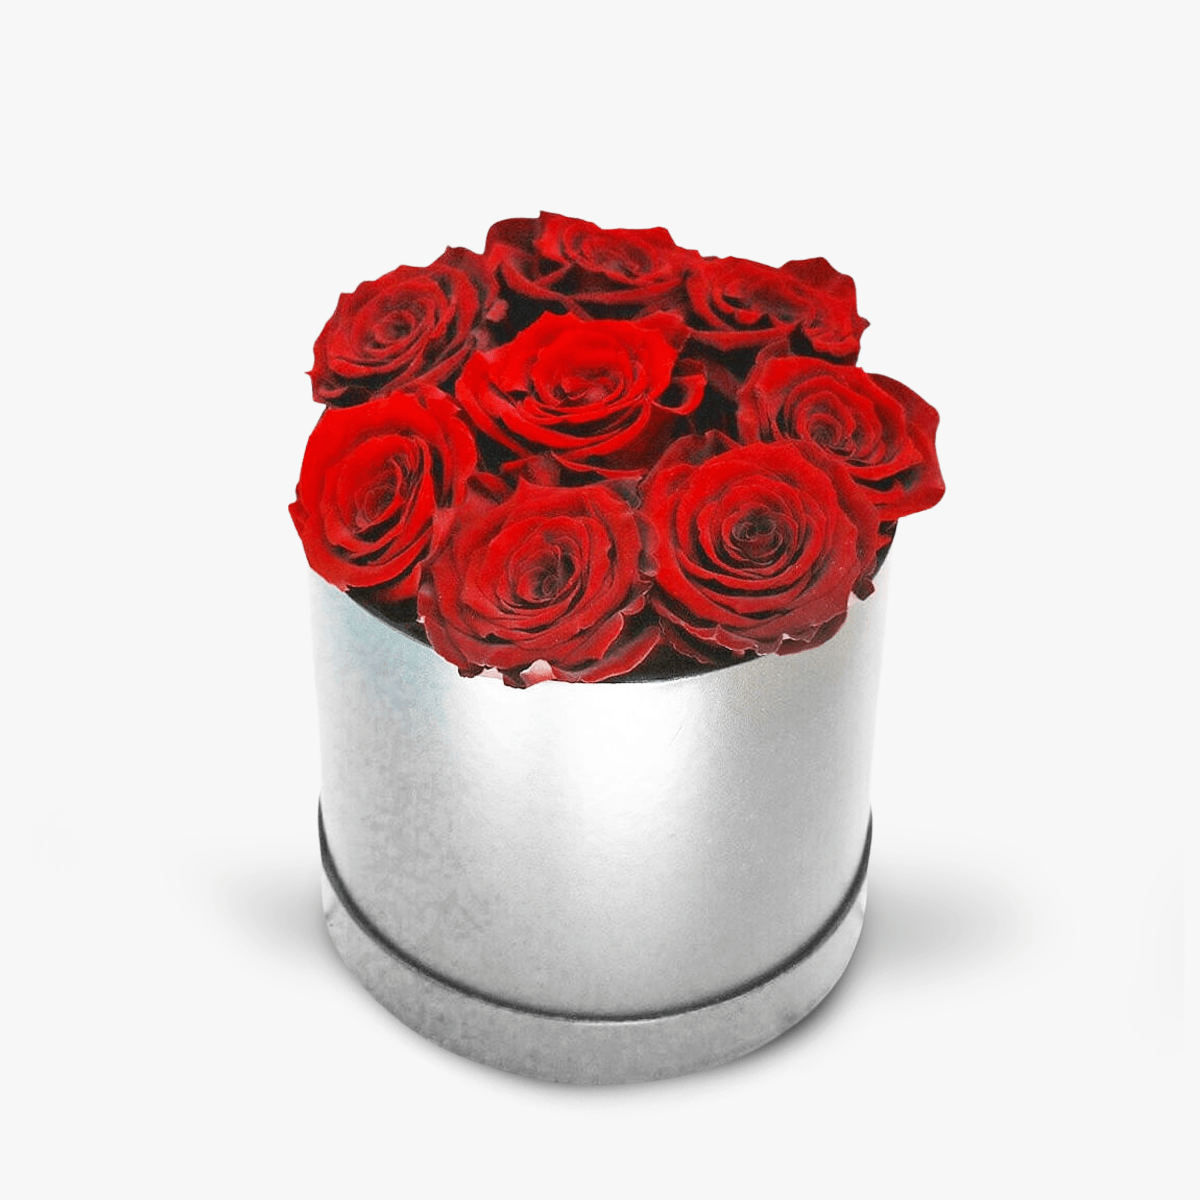 Cutie cu 9 trandafiri rosii, criogenati – Standard